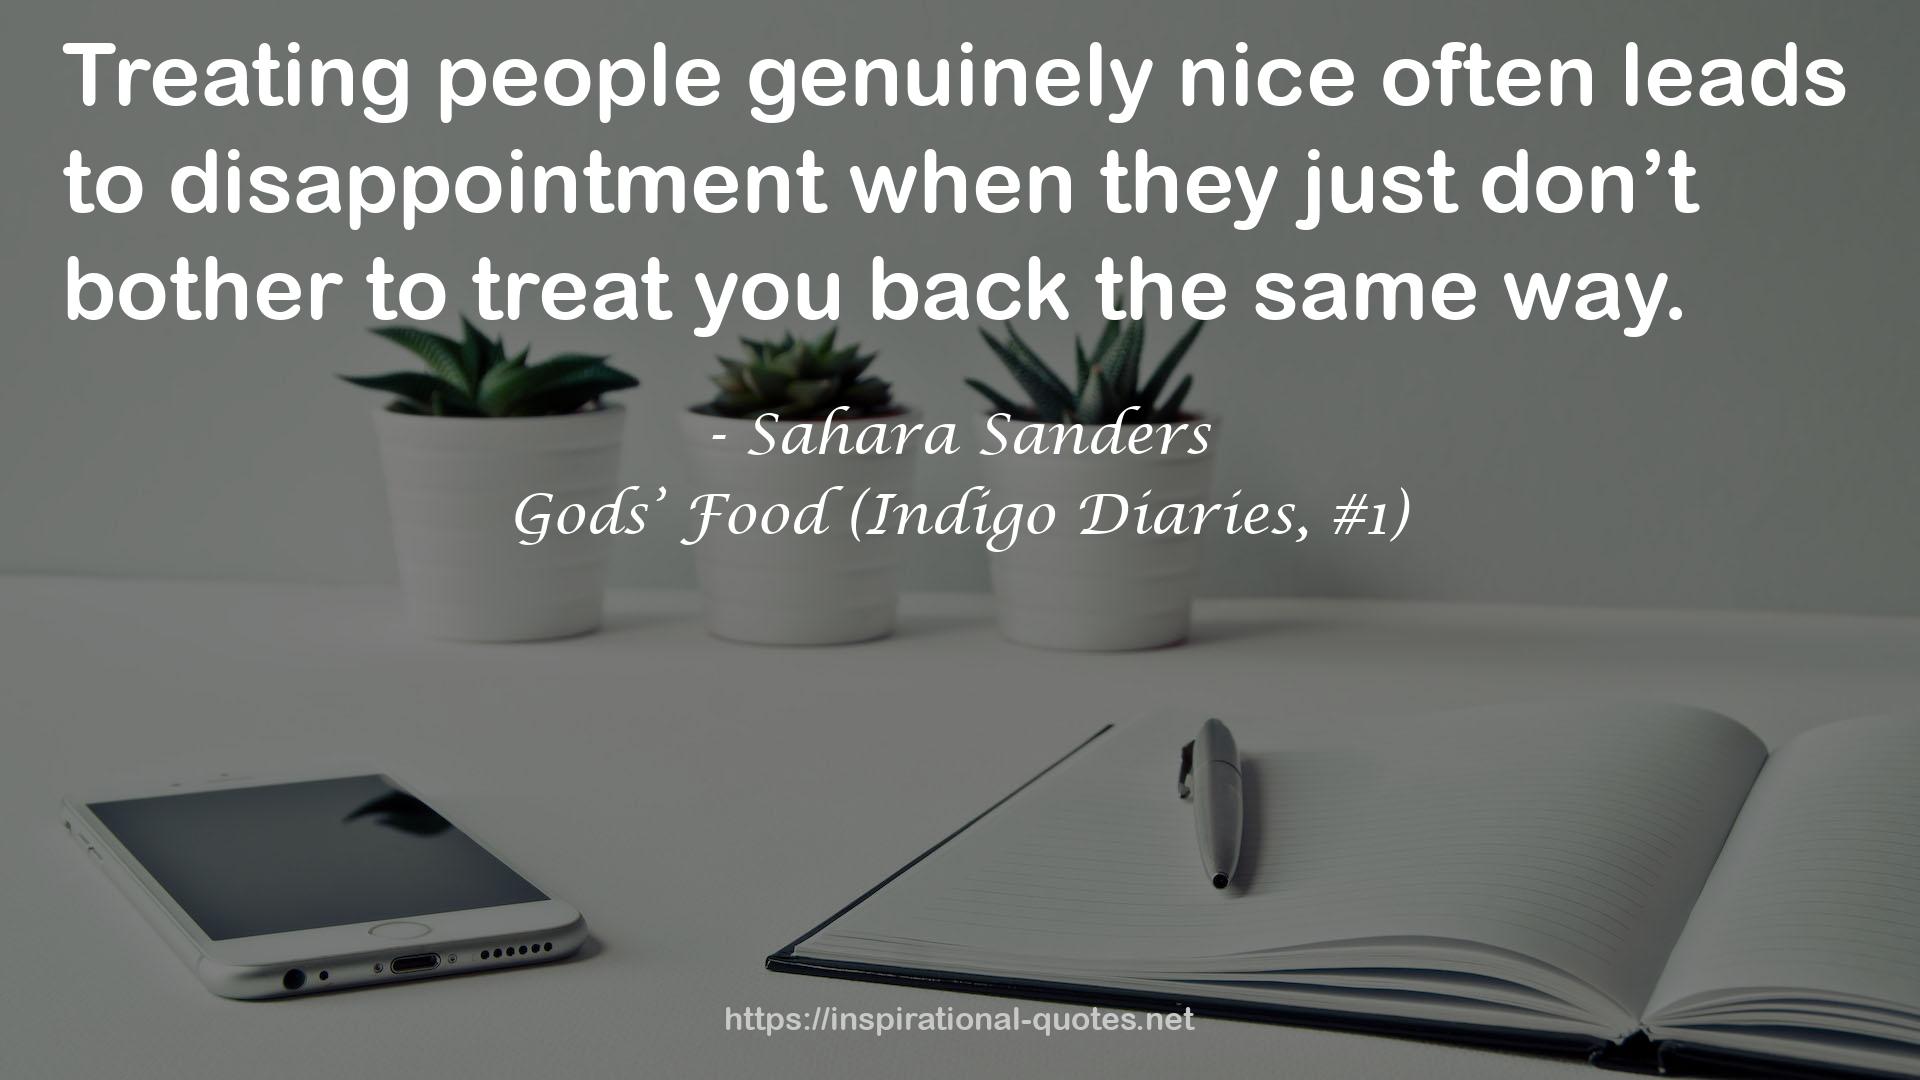 Gods’ Food (Indigo Diaries, #1) QUOTES